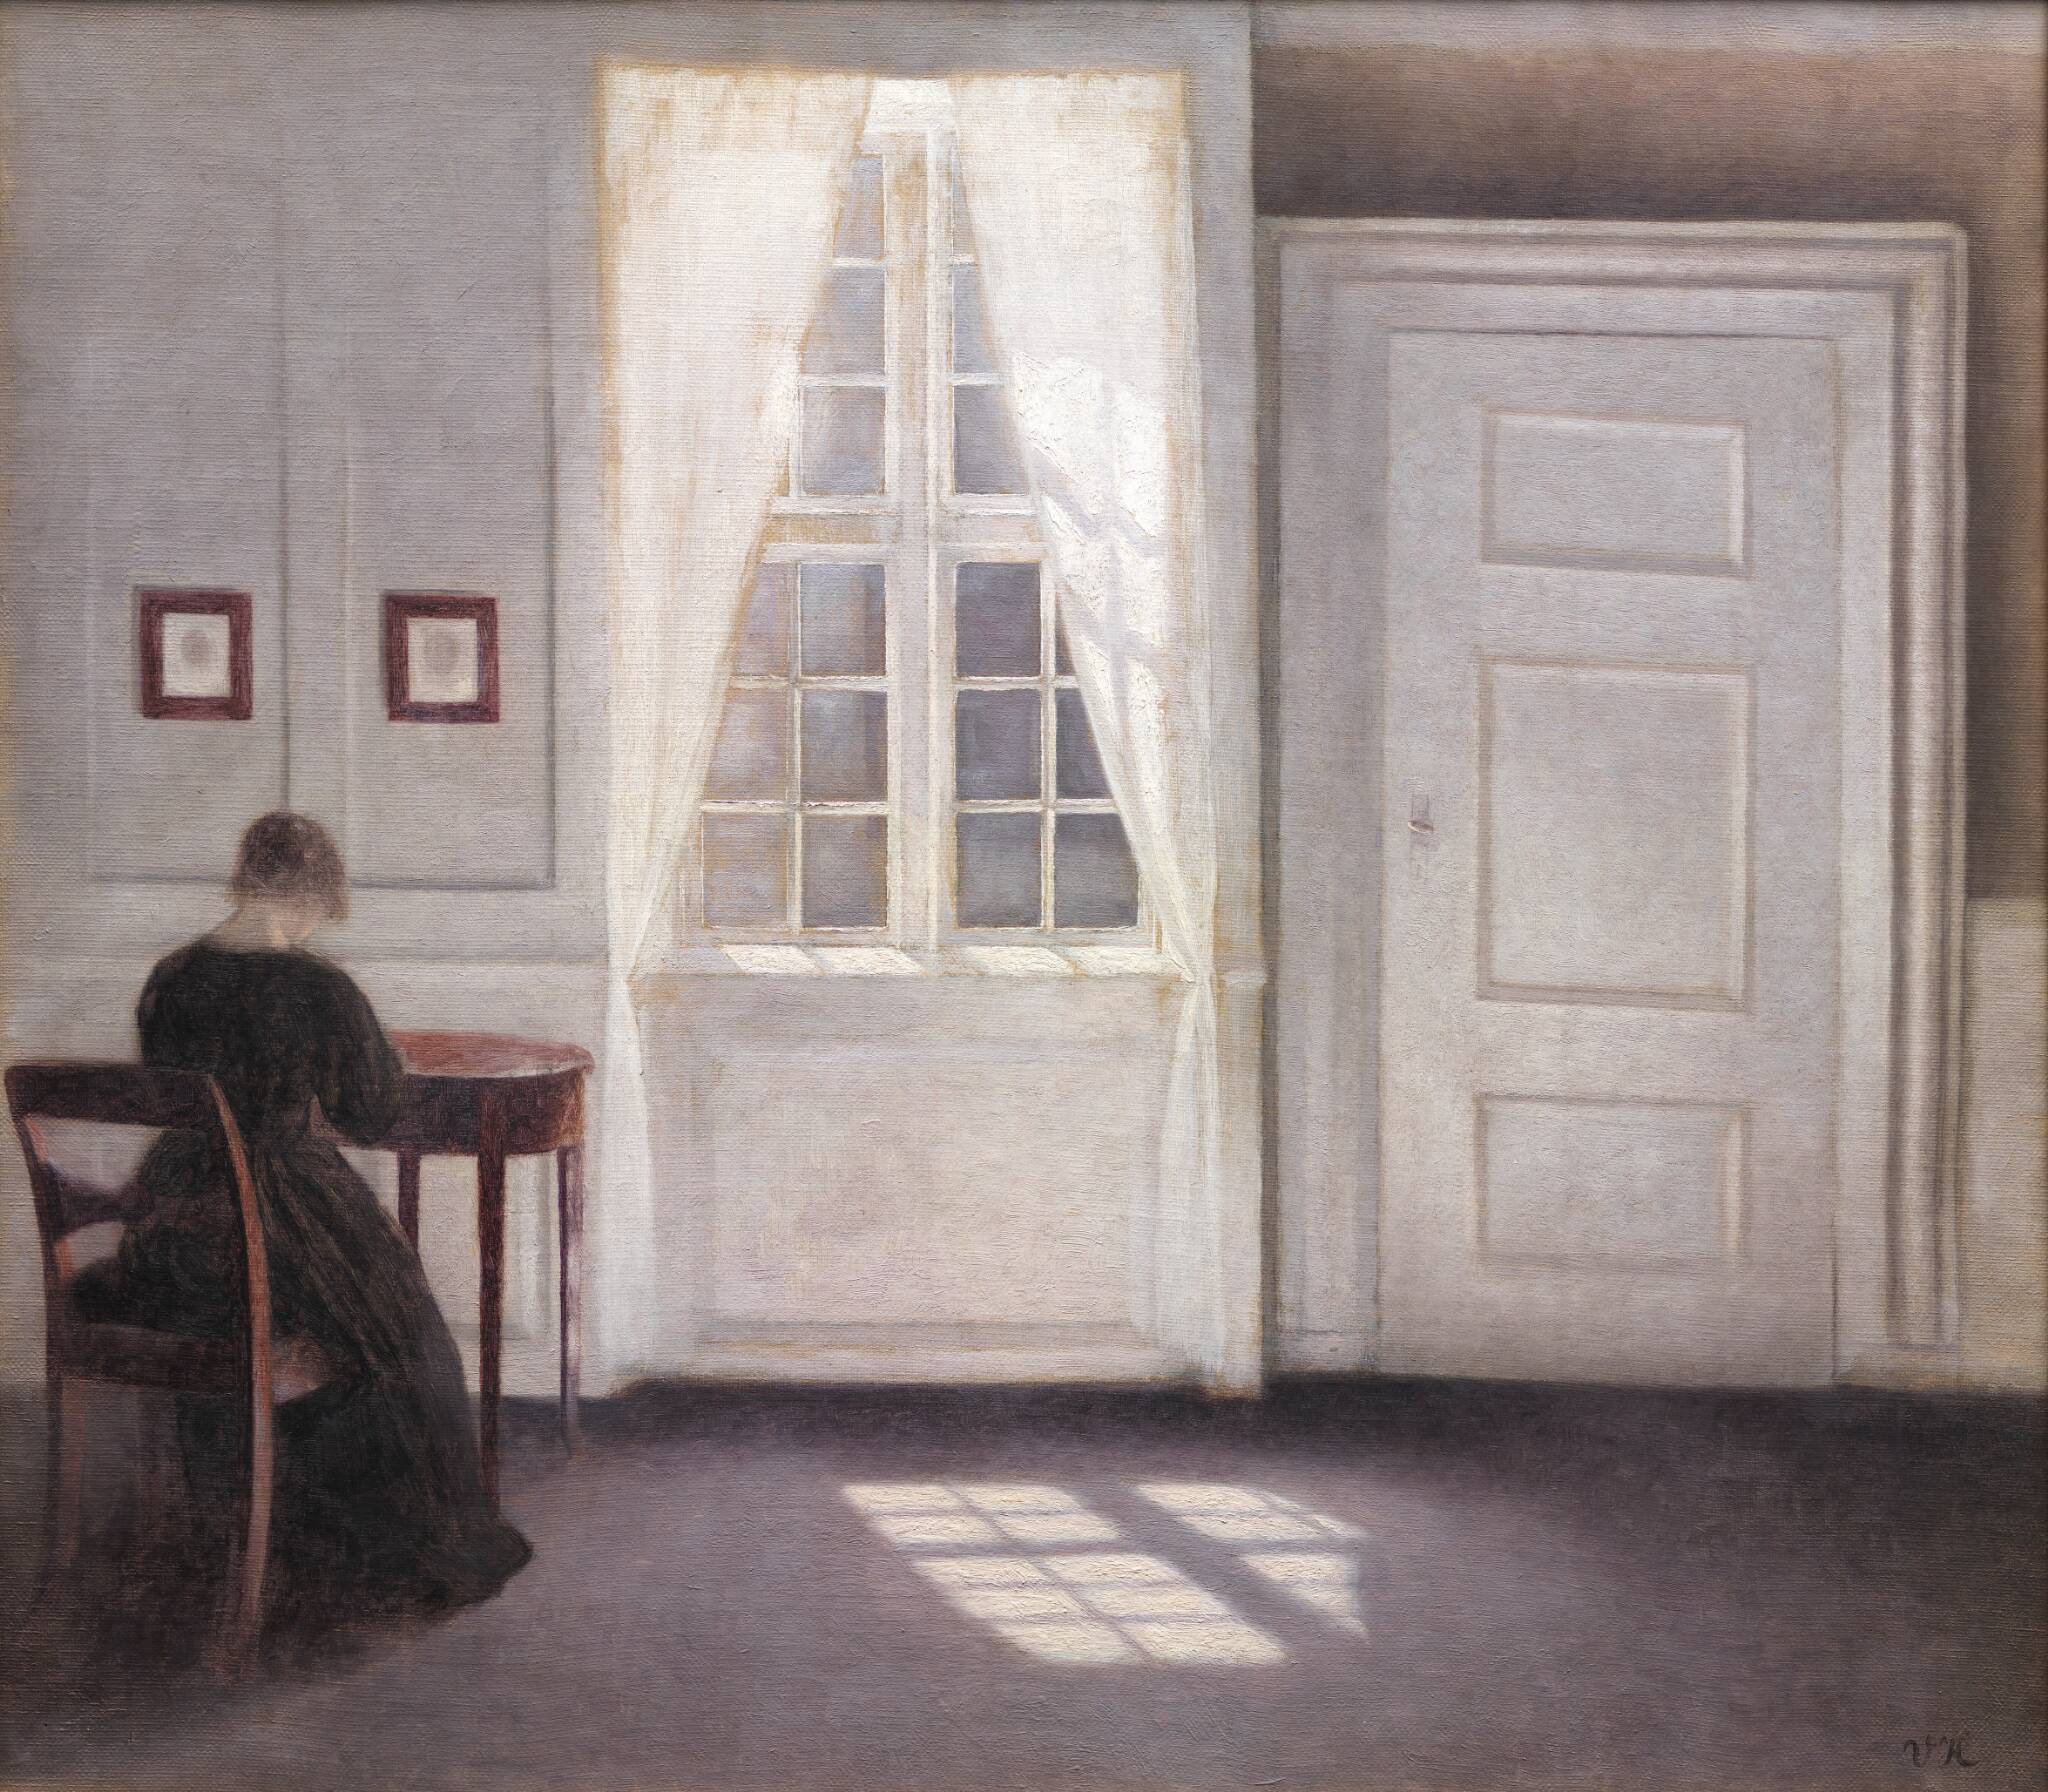 Strandgade'de İç Mekan, Zeminde Güneş Işığı (orig. "Interior in Strandgade, Sunlight on the Floor") by Vilhelm Hammershøi - 1901 - 46.5 x 52 cm 